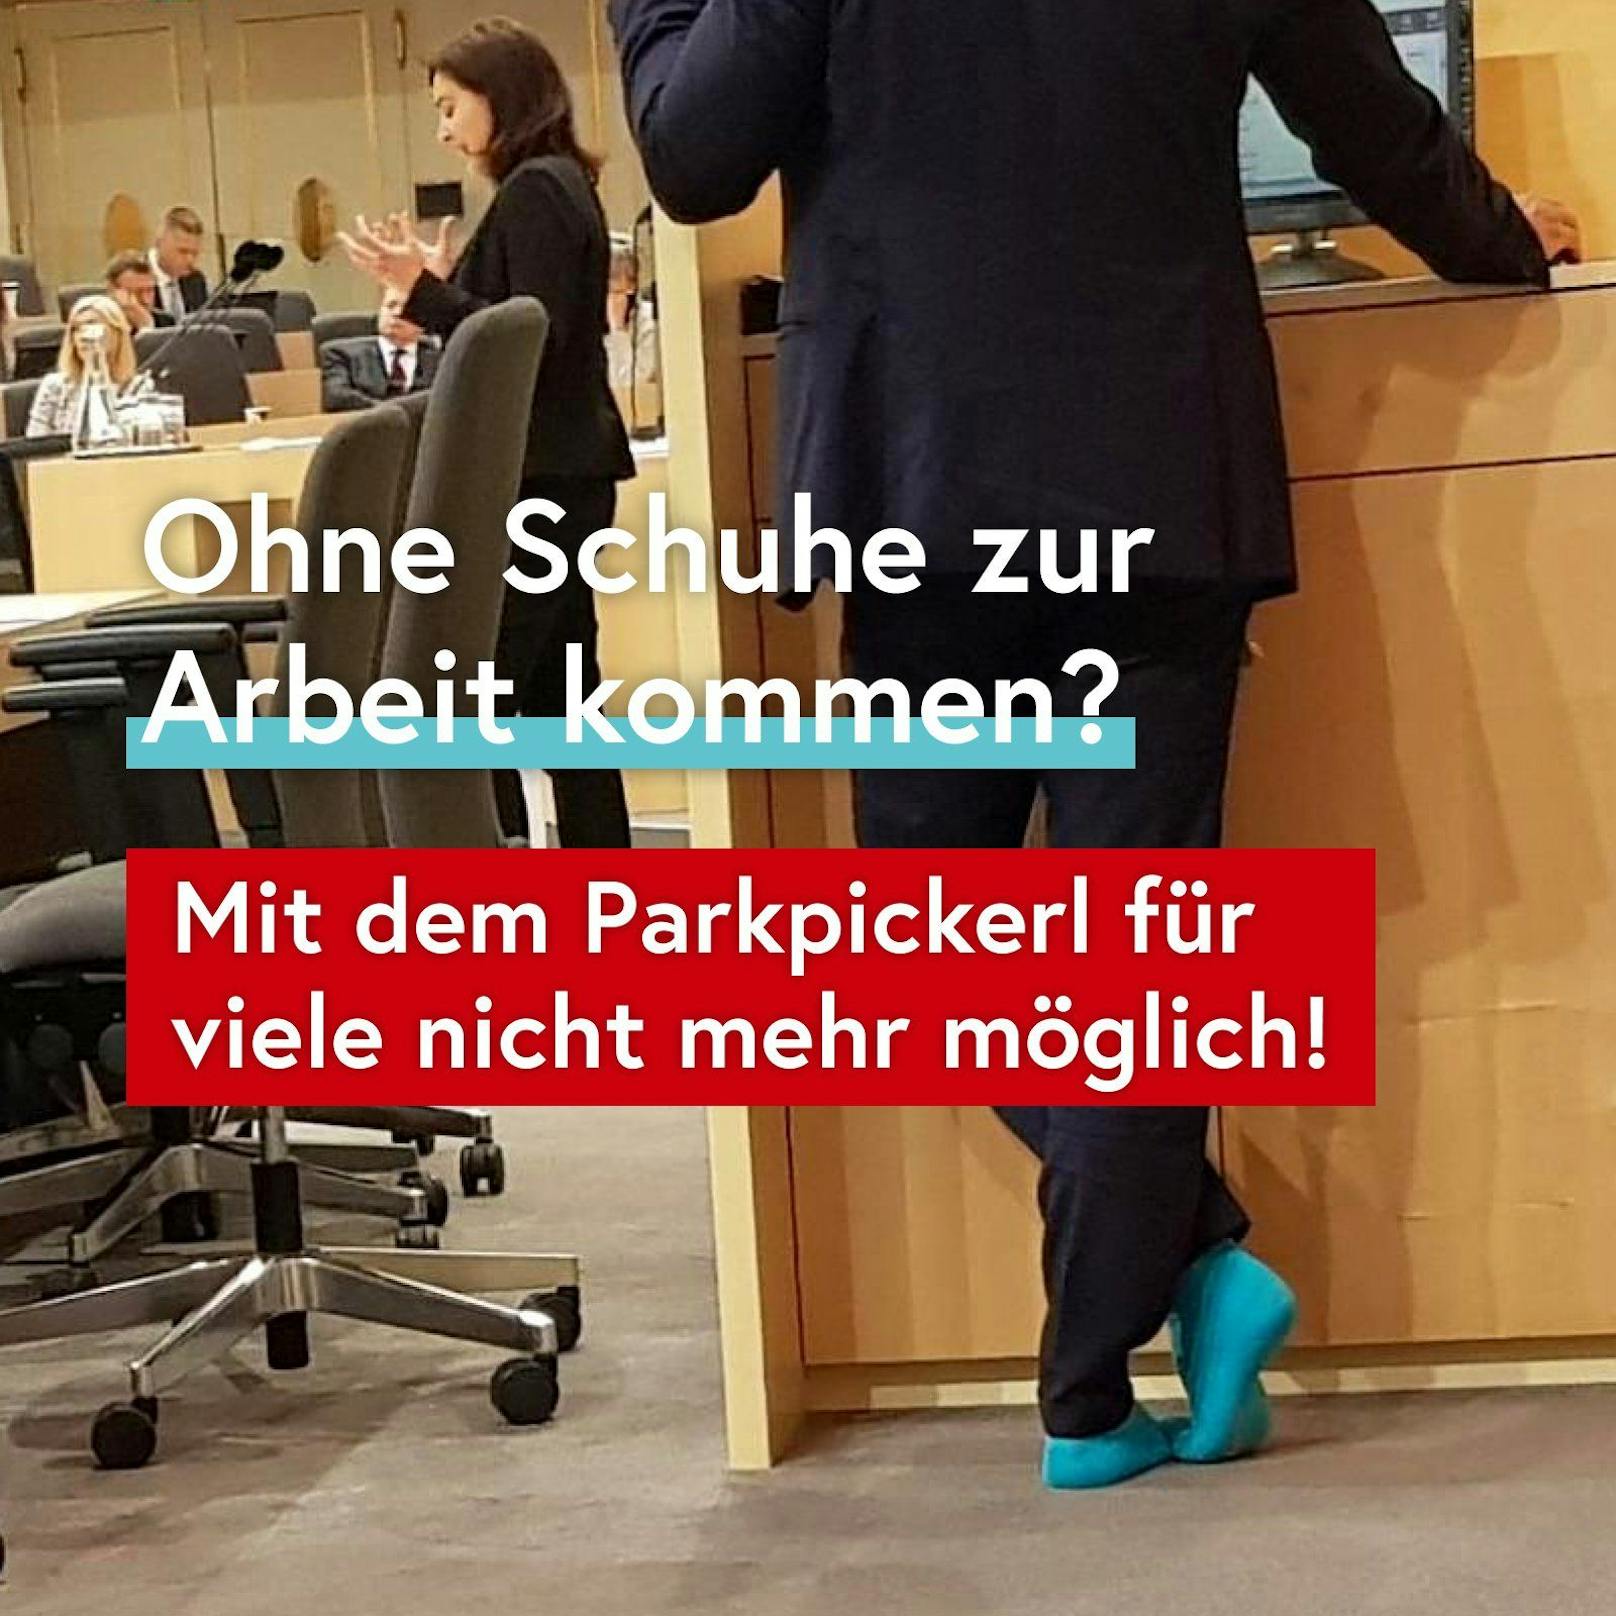 Dafür wird auch das Bild des schuhlosen ÖVP Wien-Chefs Gernot Blümel wieder hervor geholt.